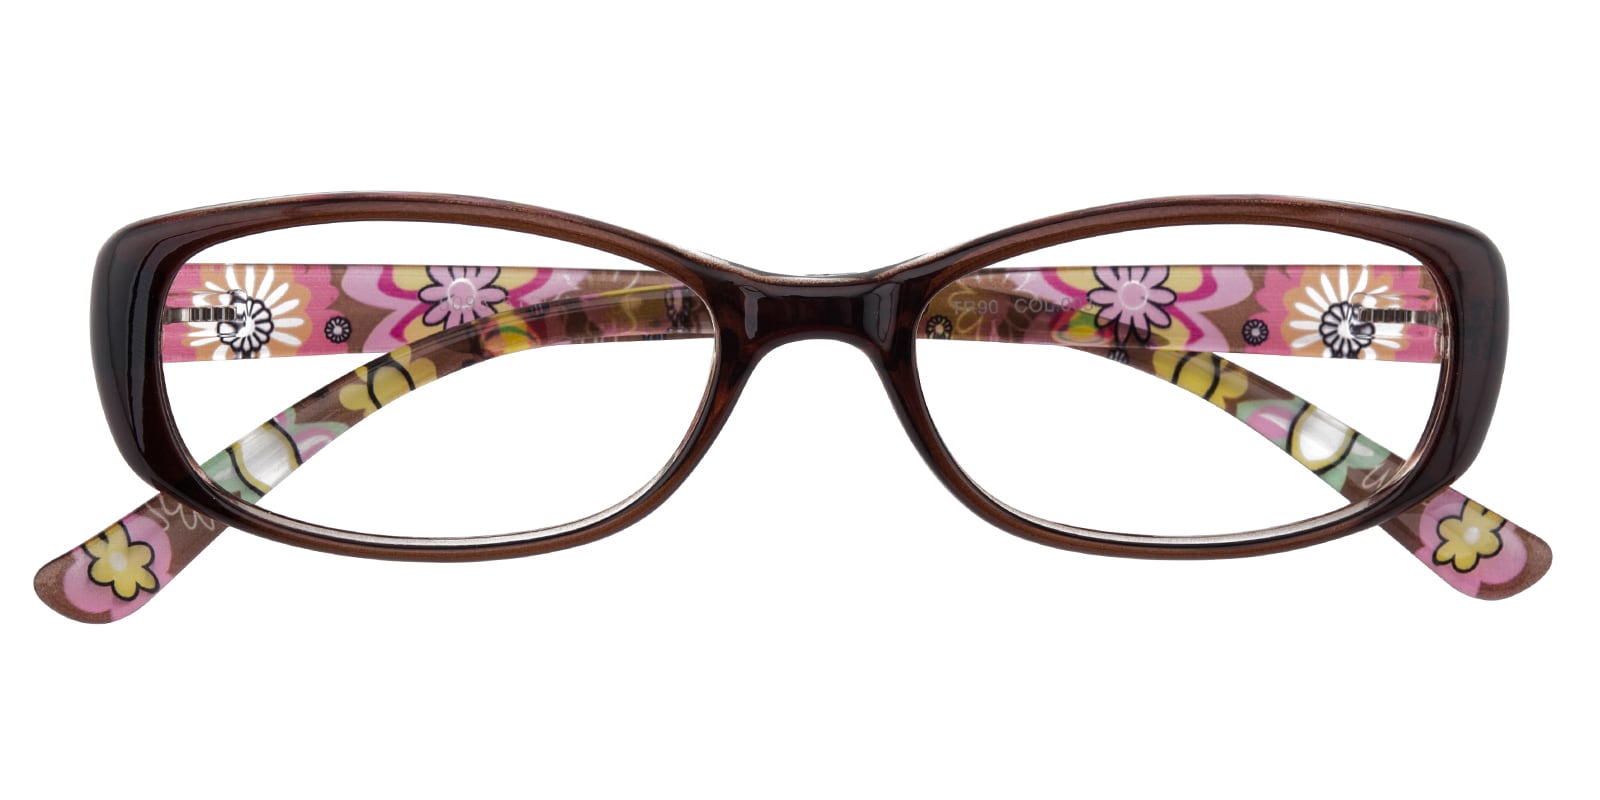 Oval Eyeglasses, Full Frame Brown/Floral TR90 - FP2101